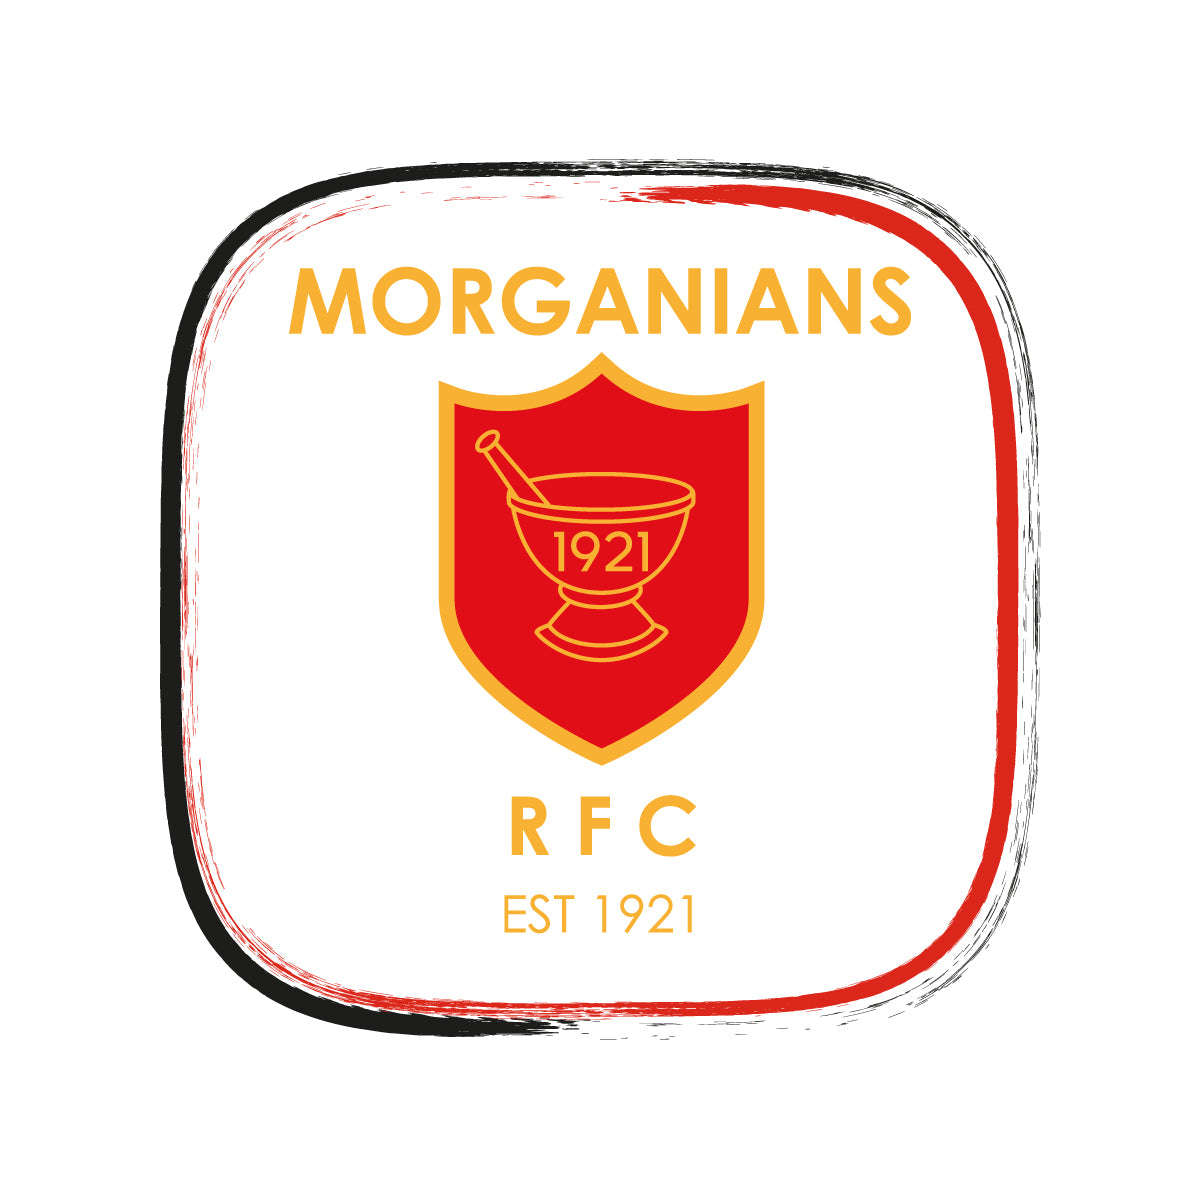 Morganians RFC